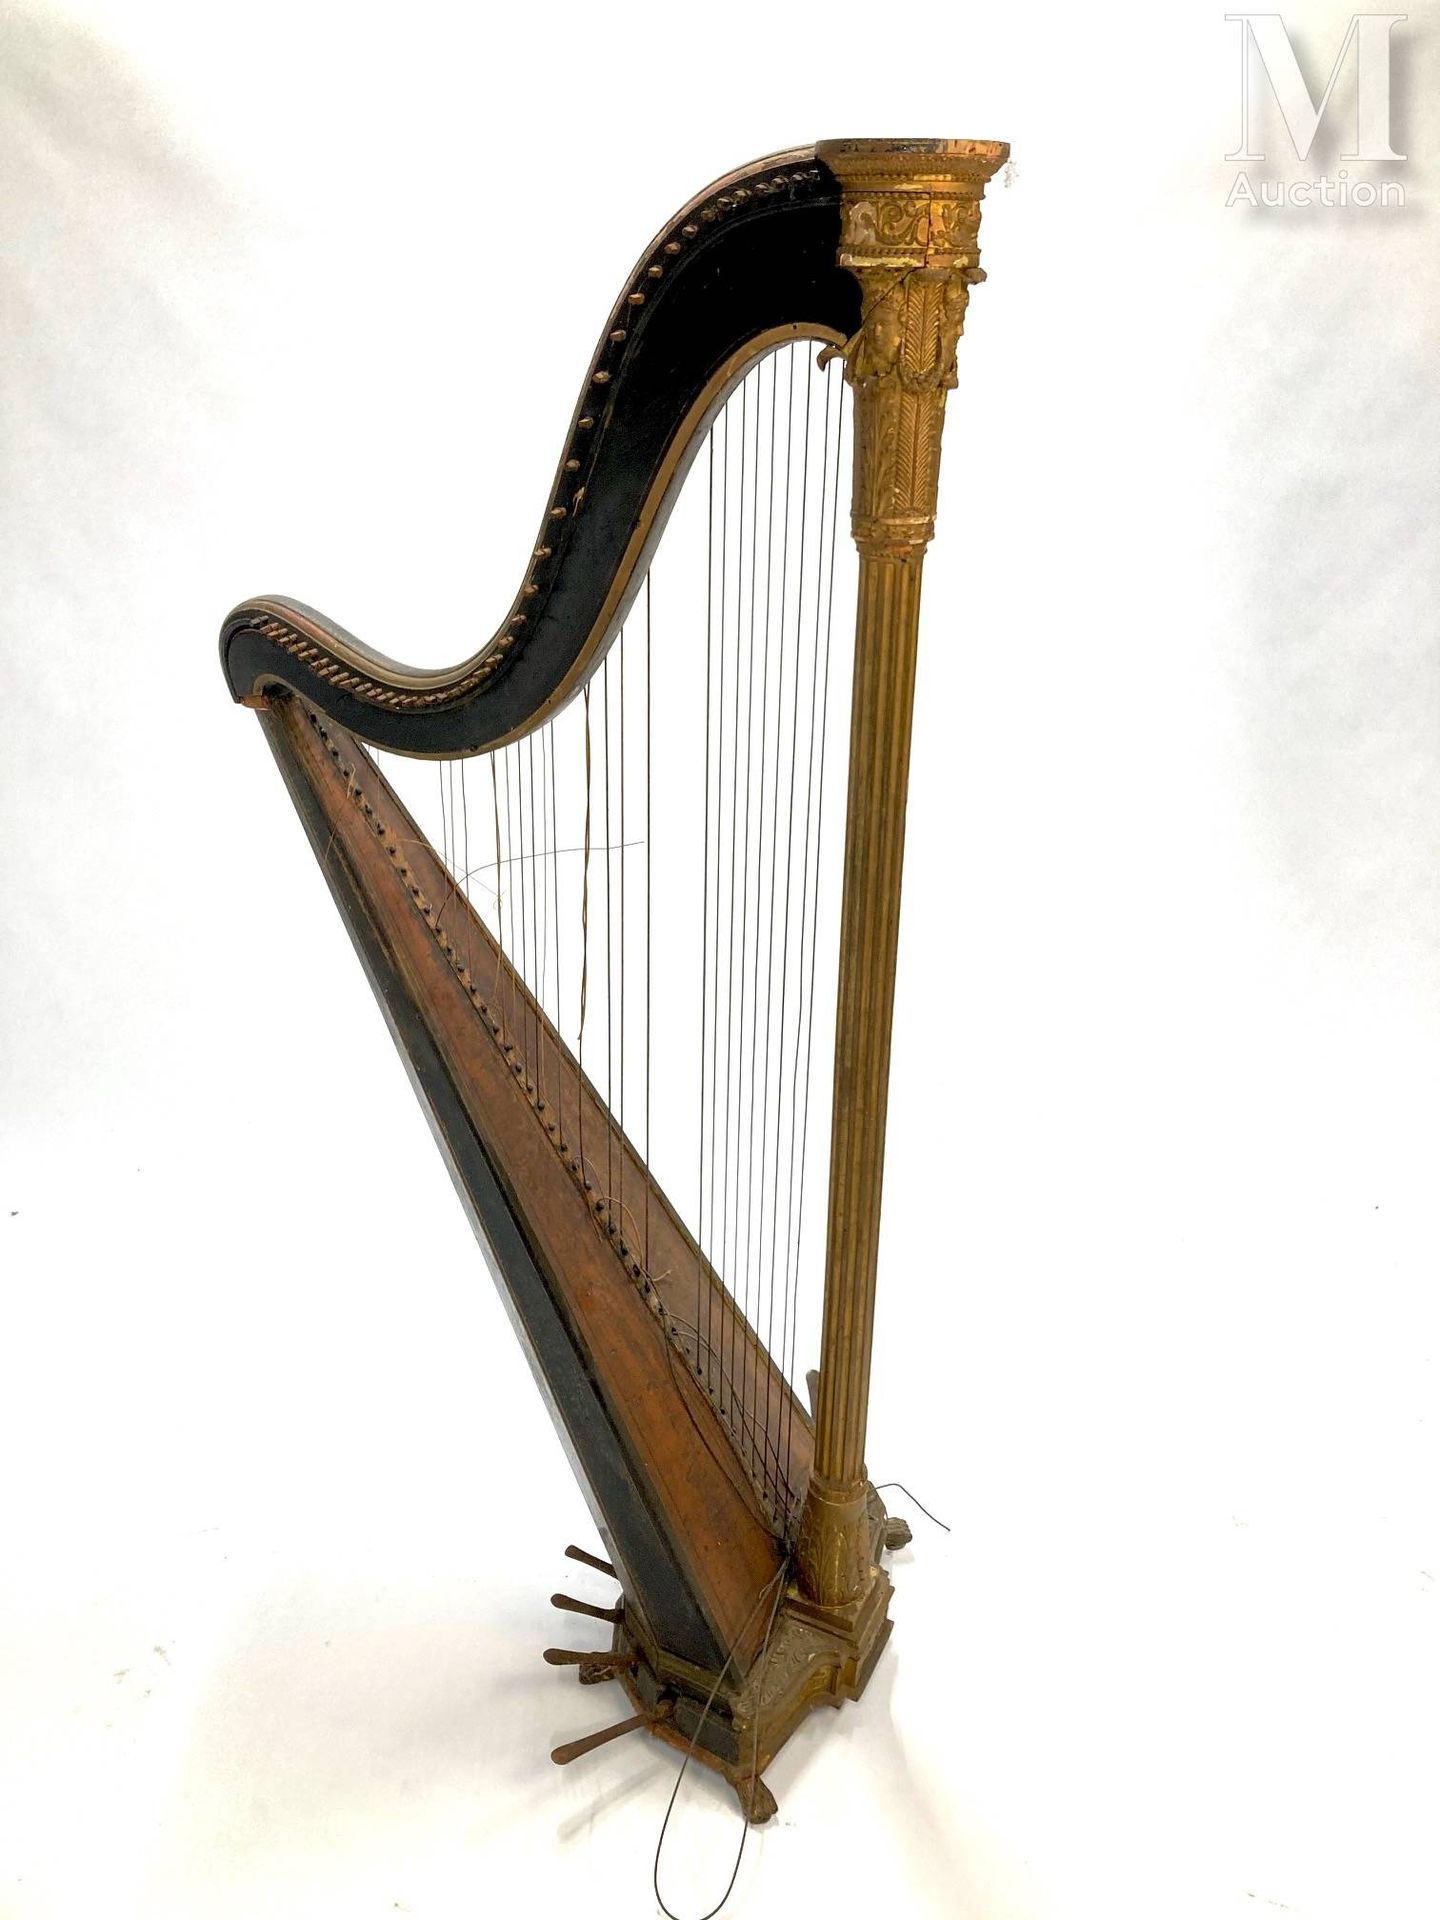 Harpe 19. Jahrhundert
Jahrhundert. Aus vergoldetem Holz, geschnitzt. Kannelierte&hellip;